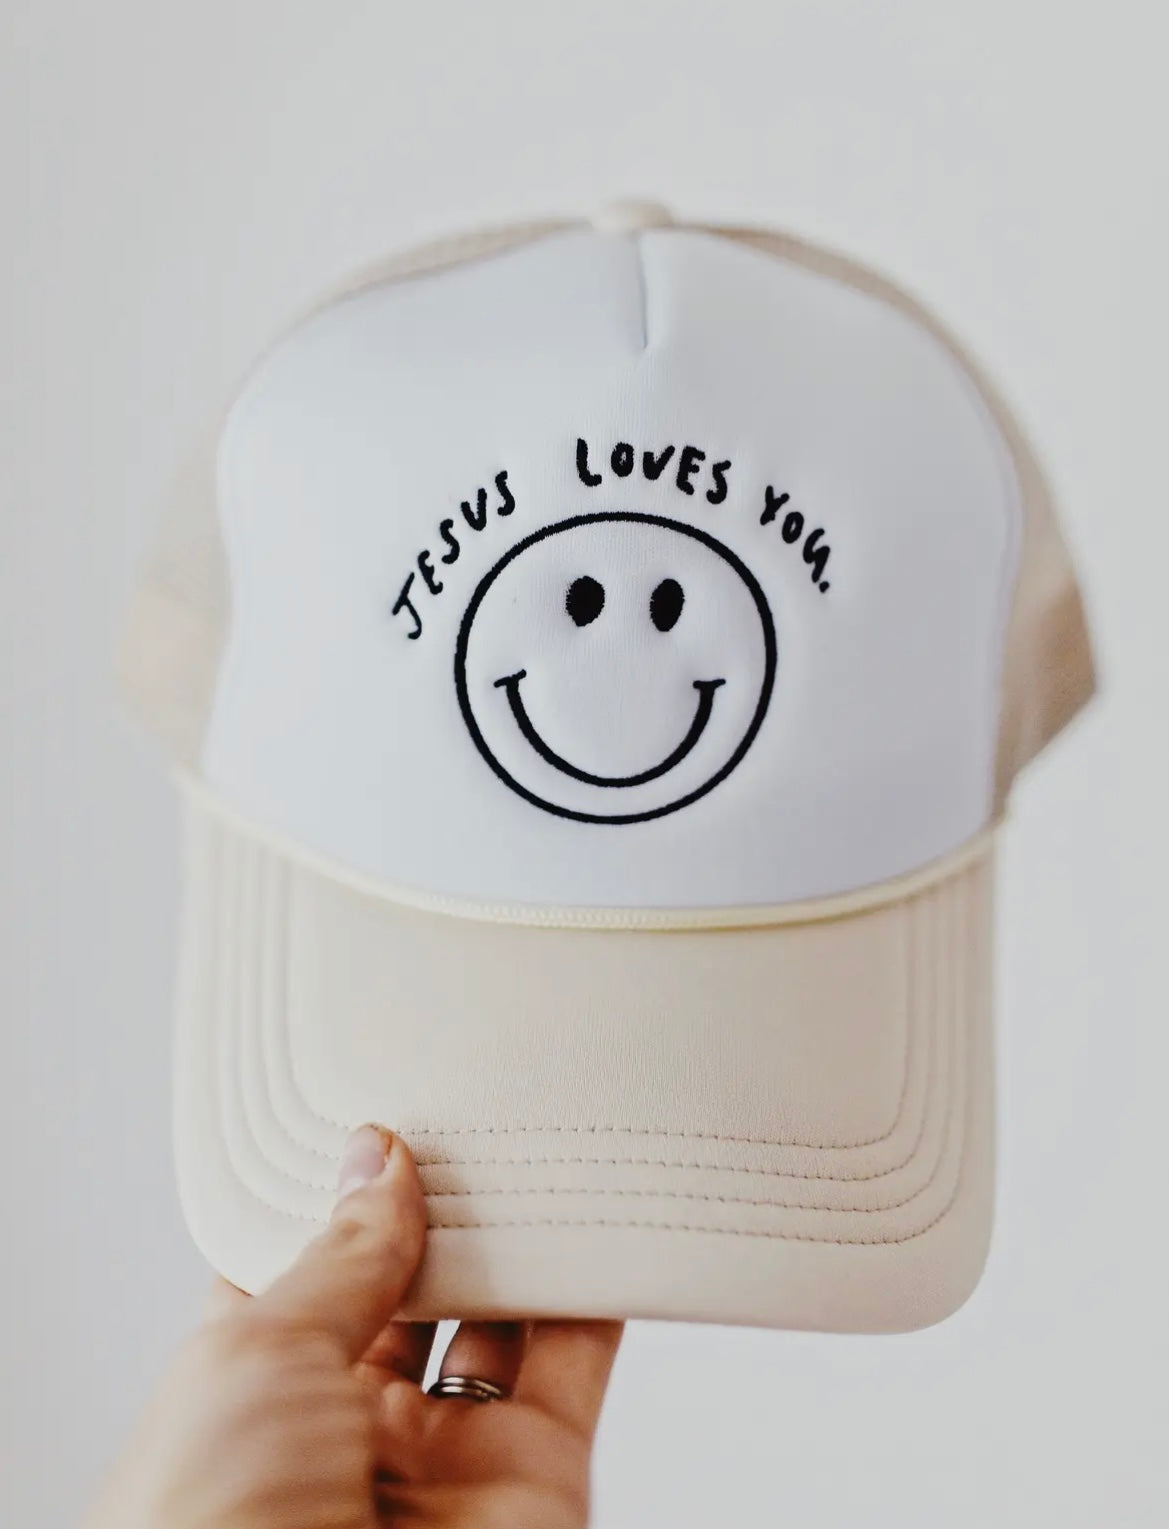 Jesus Loves You Hat